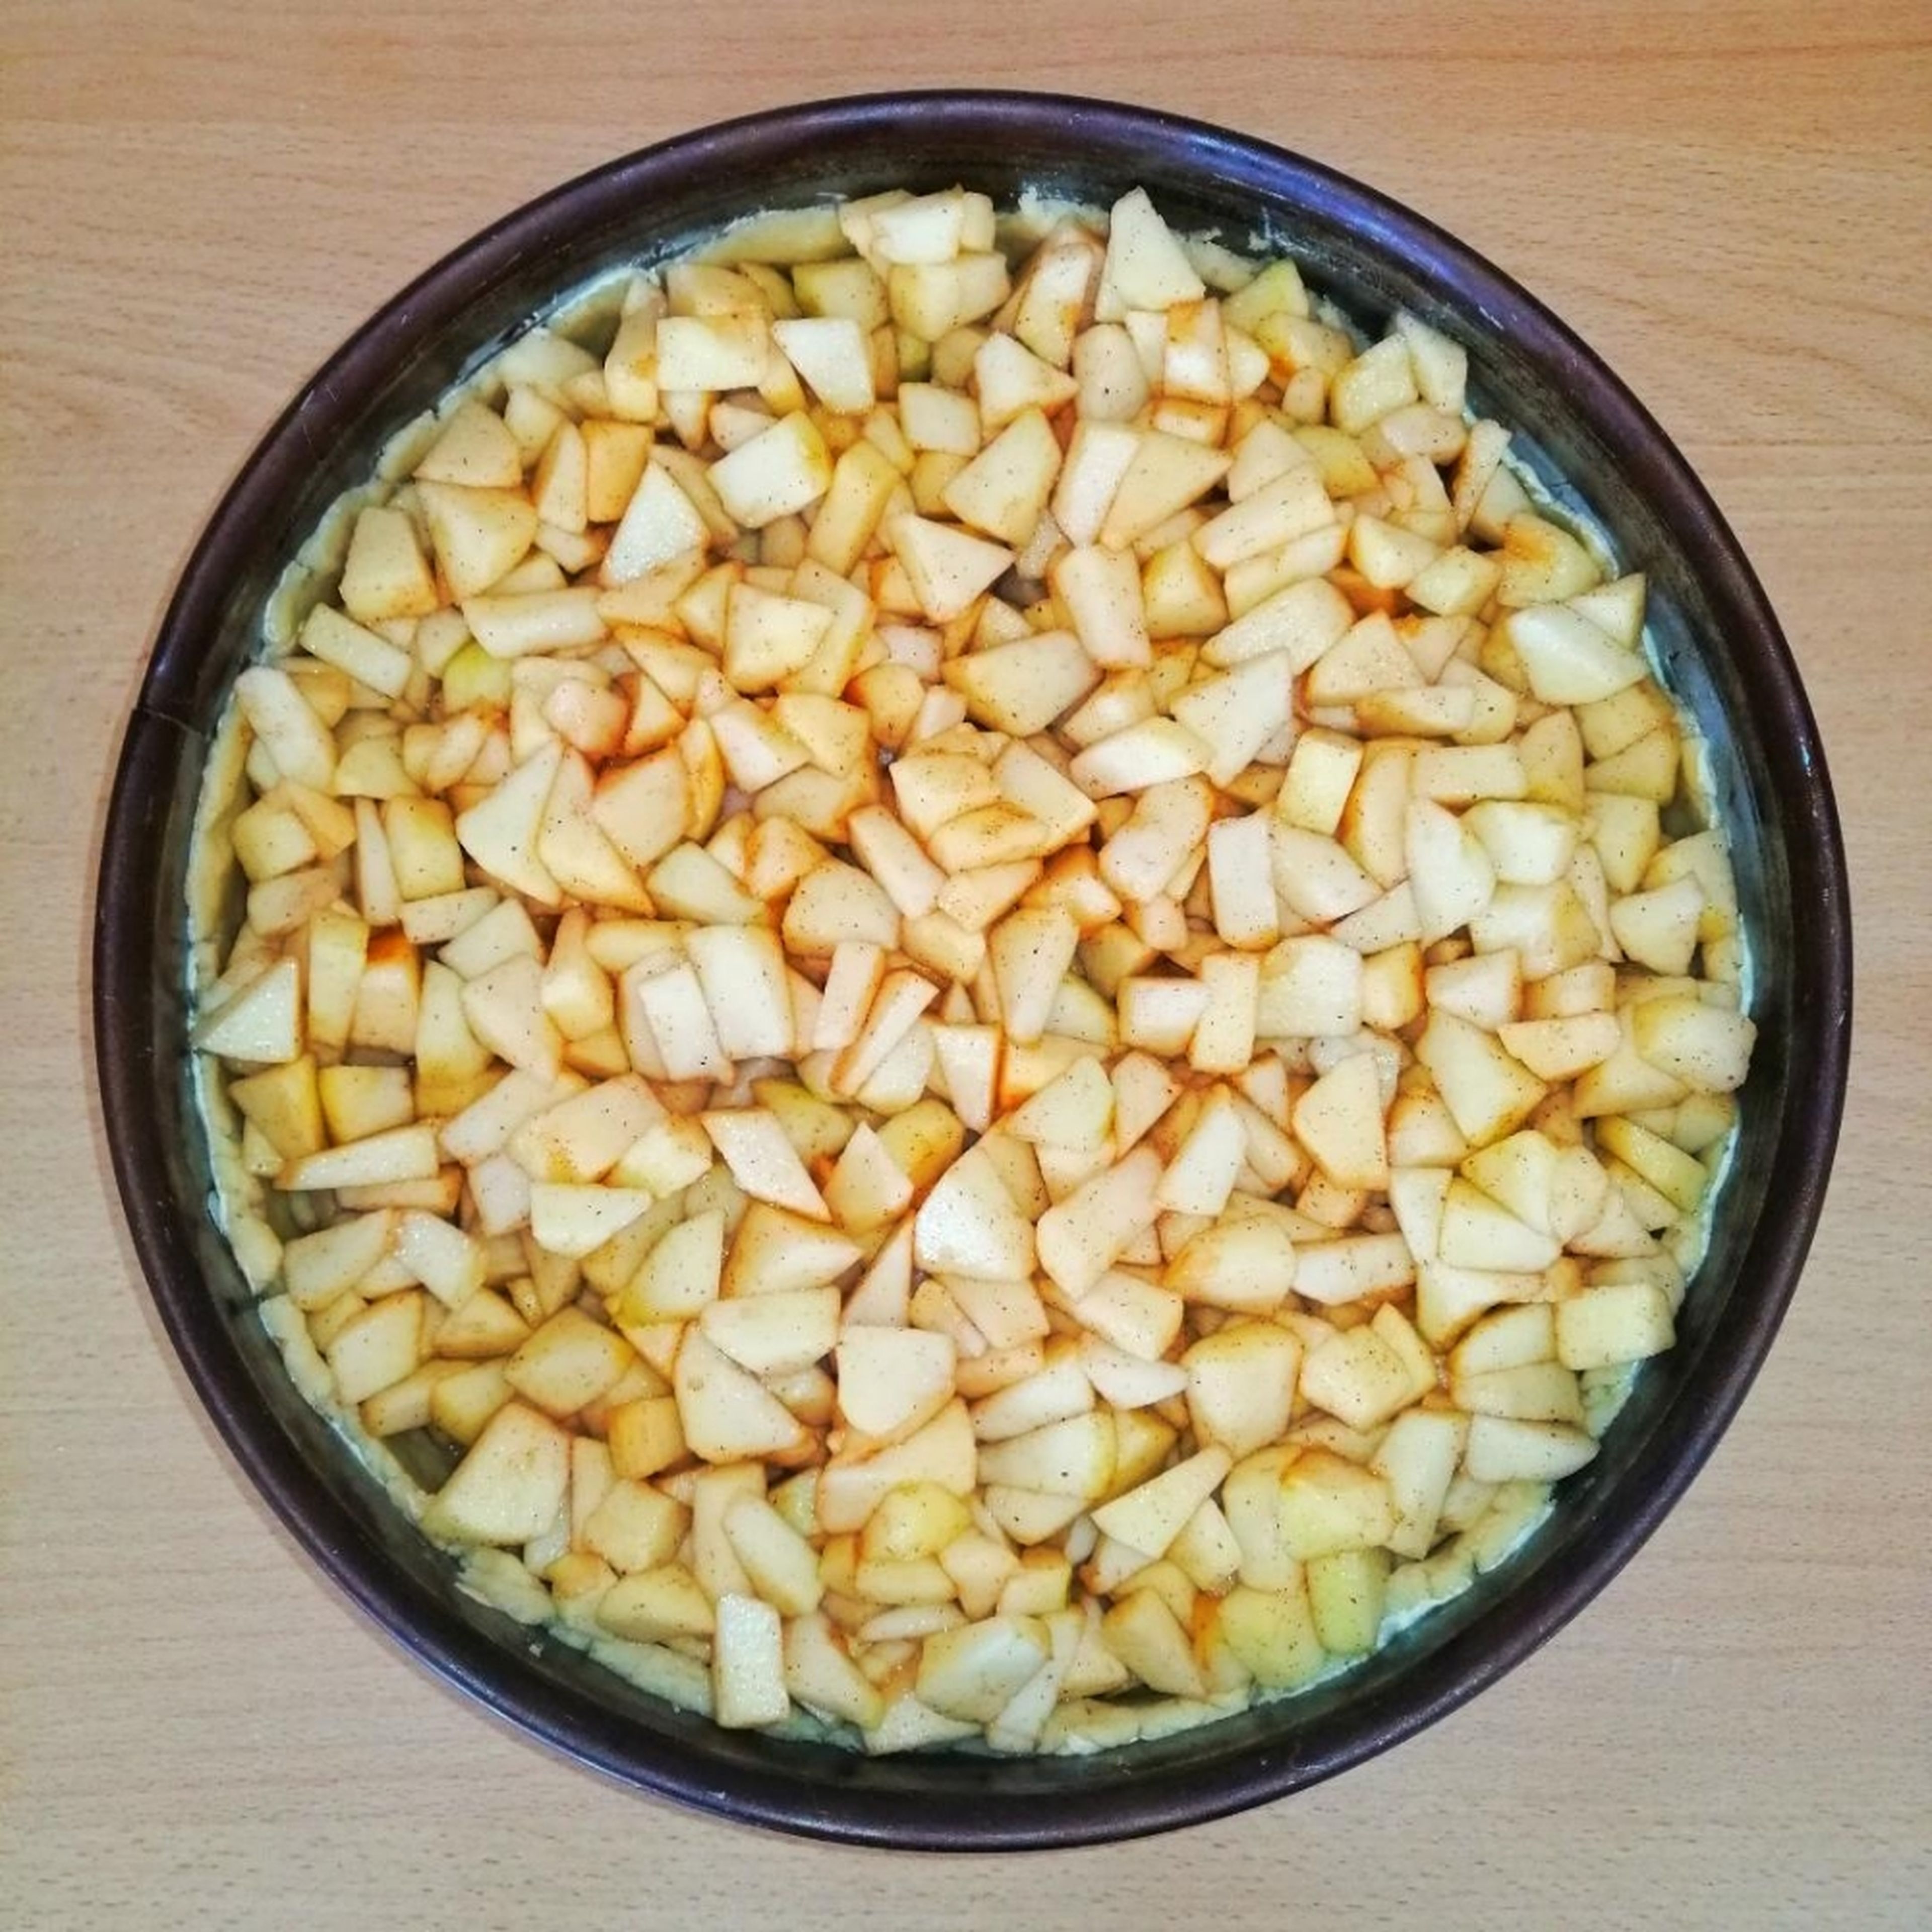 Die Apfelstückchen jetzt in die Kuchenform mit dem Teig geben. Die Form kann man dabei ein paar Mal auf die Arbeitsfläche klopfen. Dabei verteilen sich die Äpfel wie von selbst recht gerade in der Form.